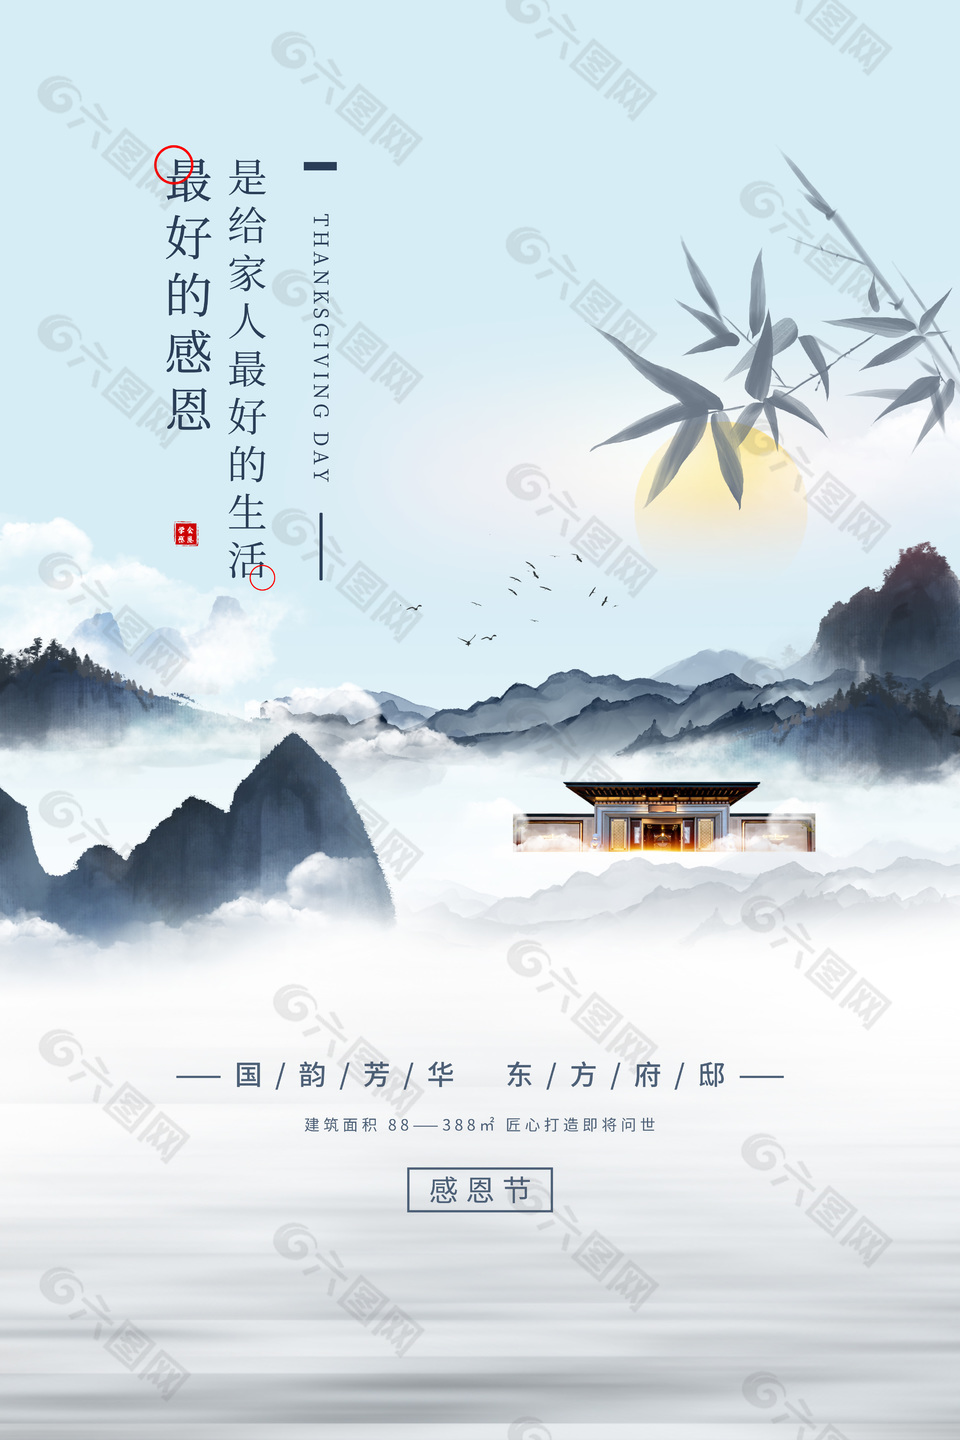 大气中国风地产感恩节推广宣传海报